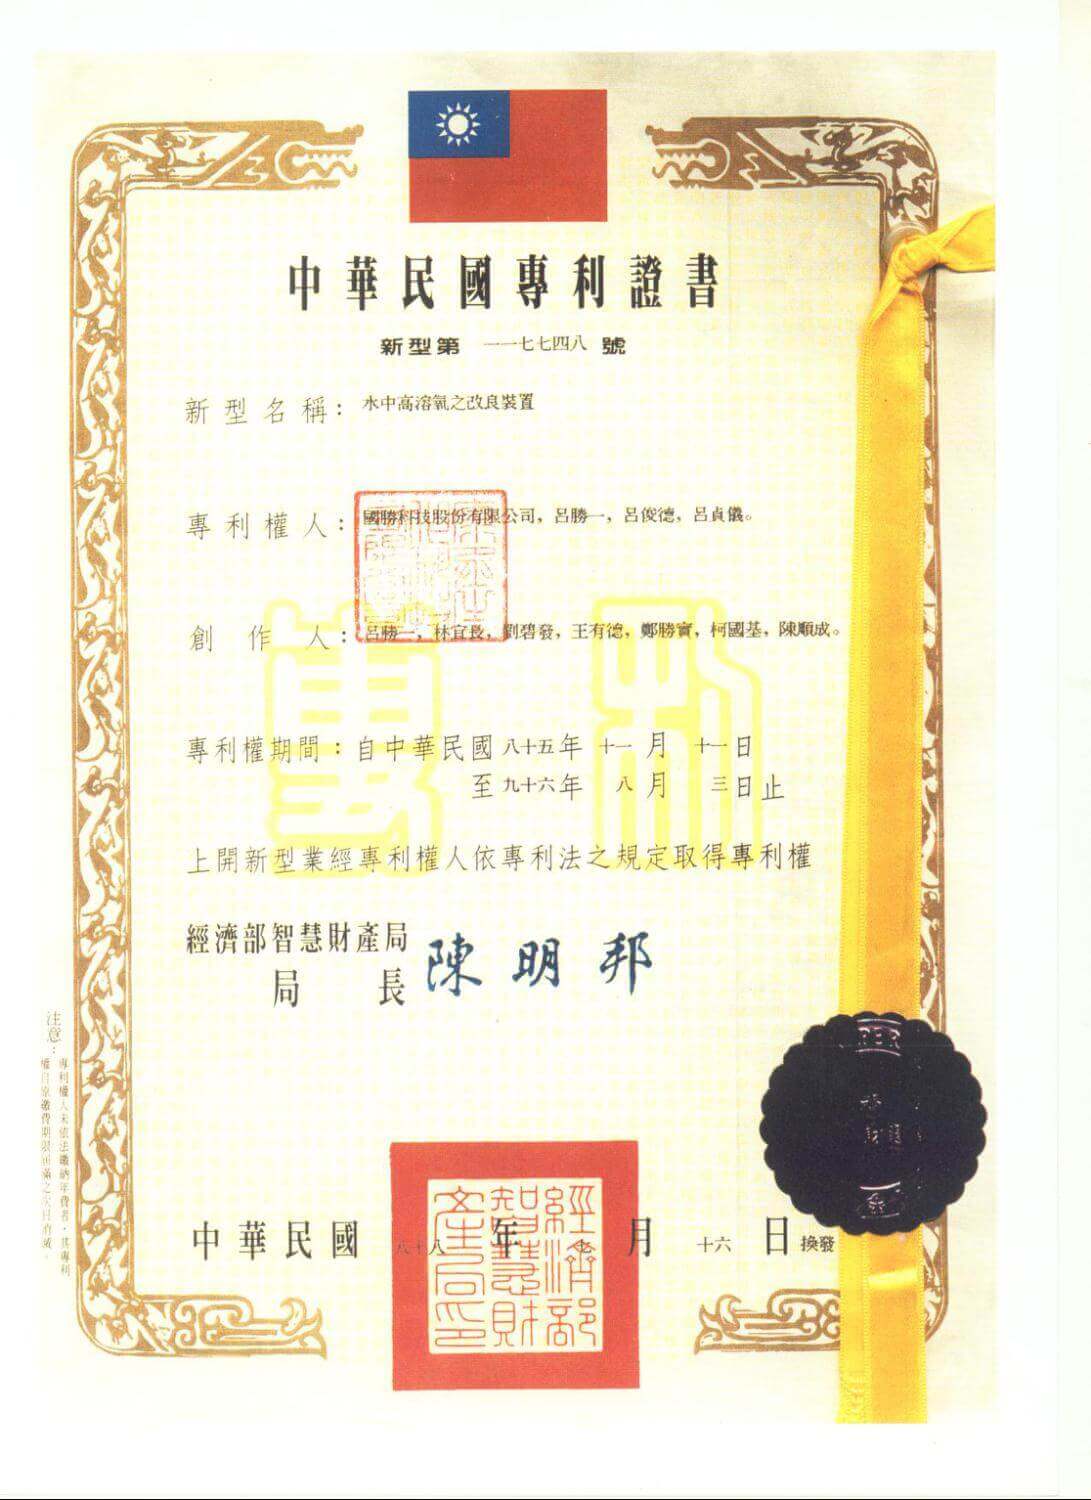 Chienfu-Tec CNC patents in Taiwan-1